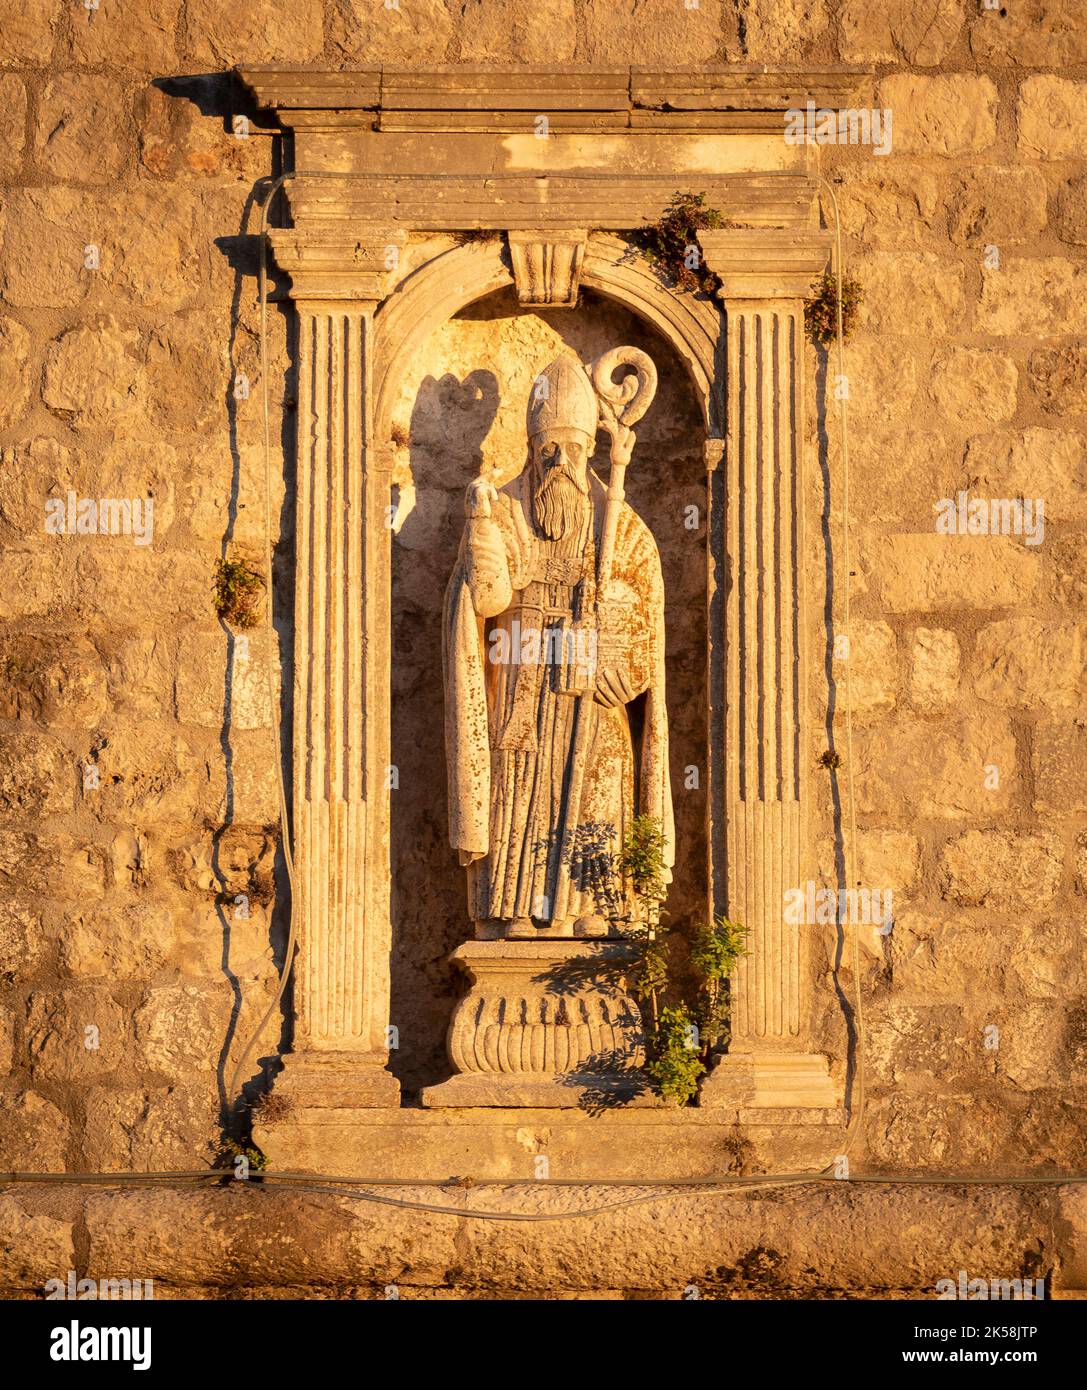 DUBROVNIK, CROATIE, EUROPE - Statue de Saint Blaise, patron de Dubrovnik, sur la Tour Minceta. Banque D'Images